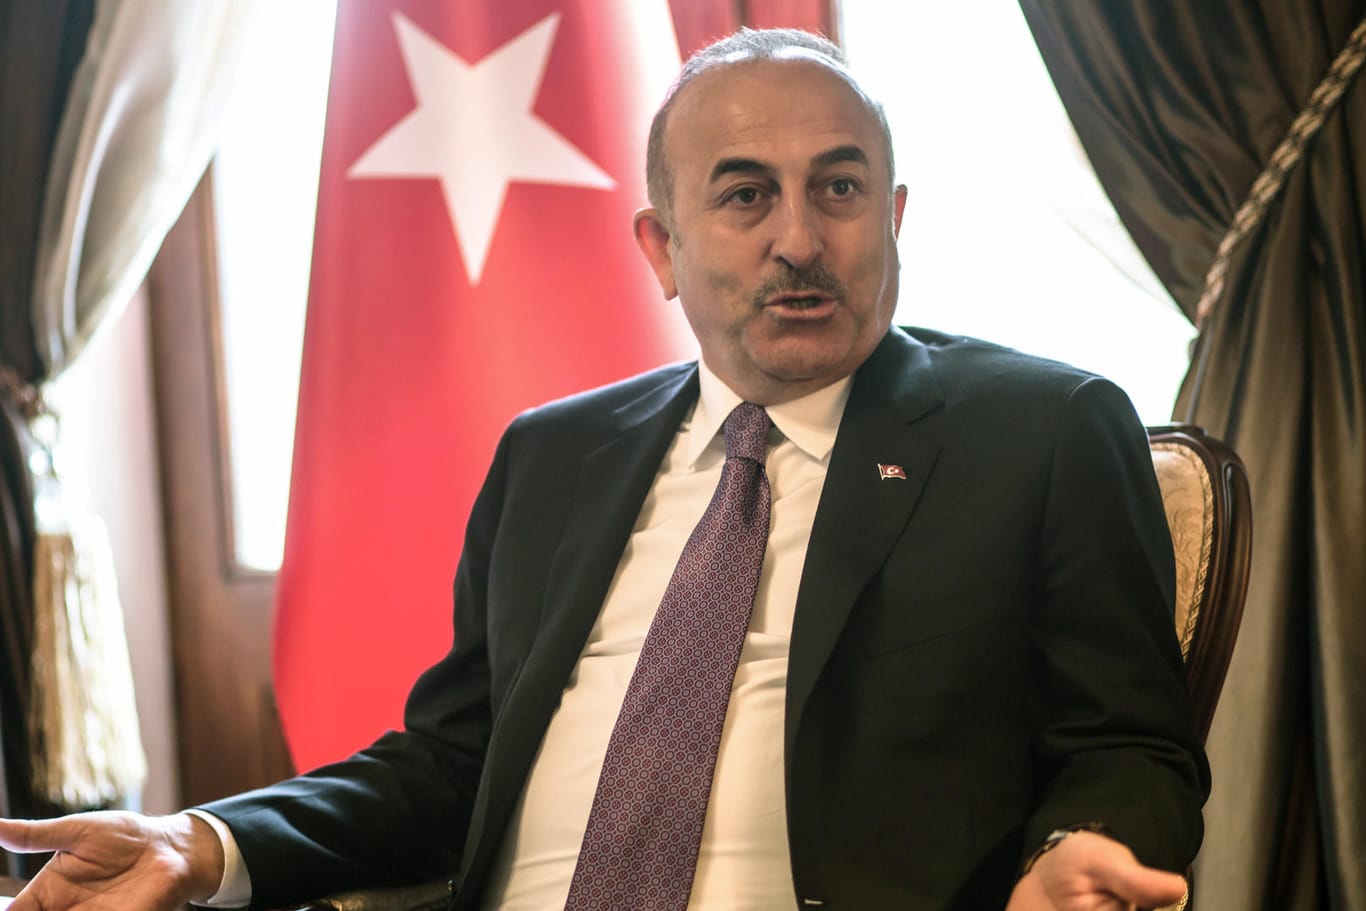 Der türkische Außenminister Mevlüt Cavusoglu: "Wir sollten den Dialog aufrecht erhalten."